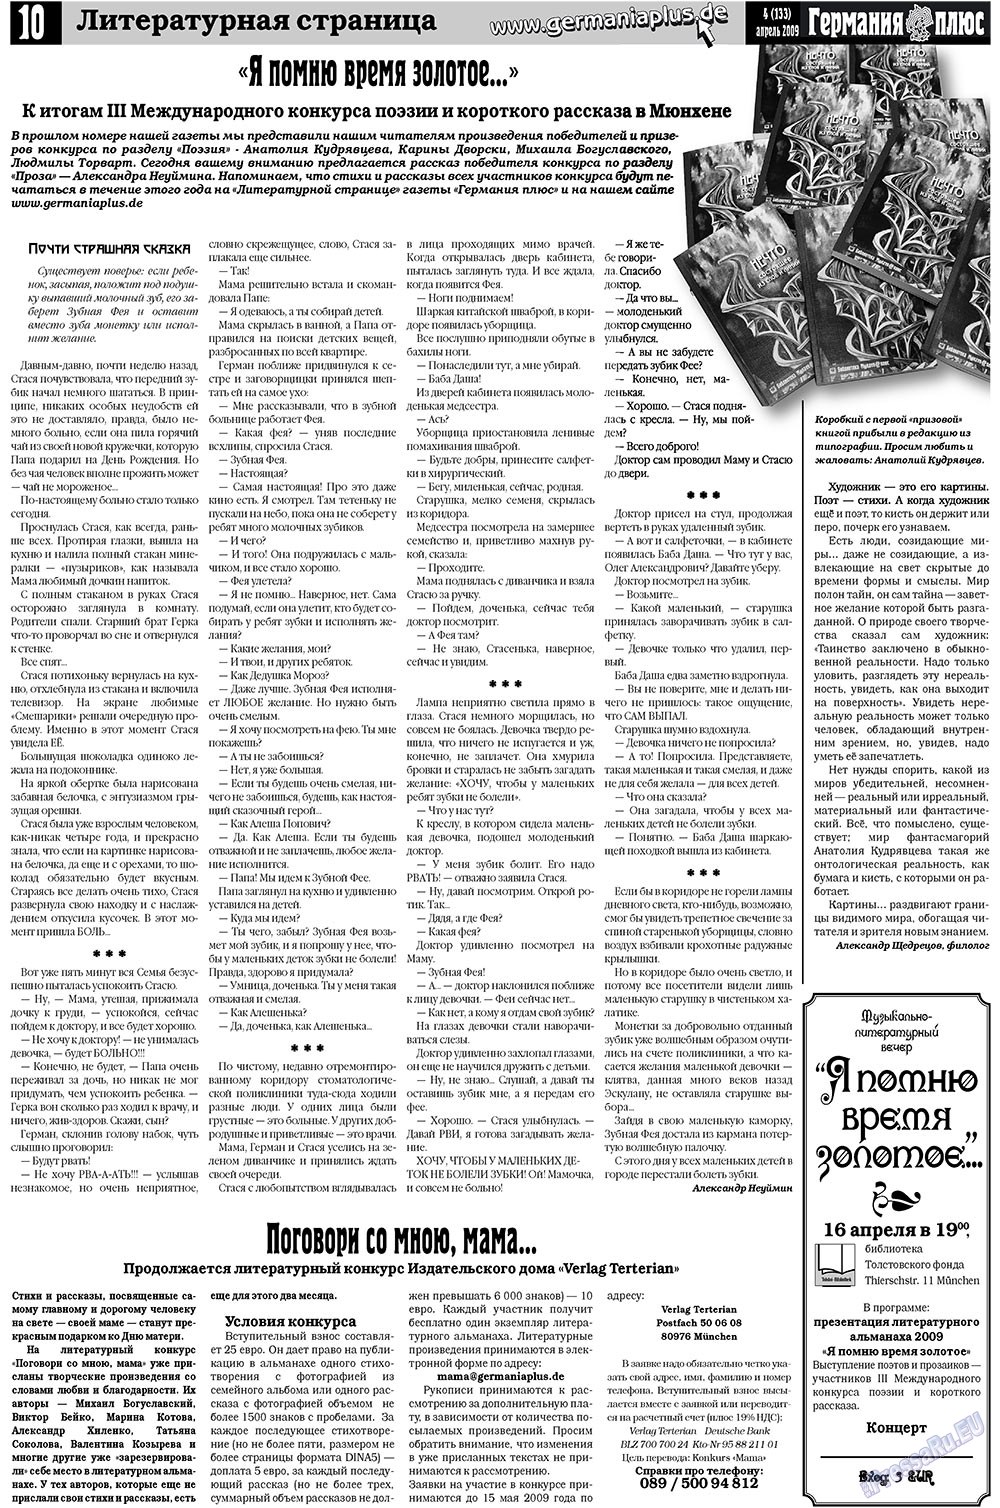 Германия плюс, газета. 2009 №4 стр.14